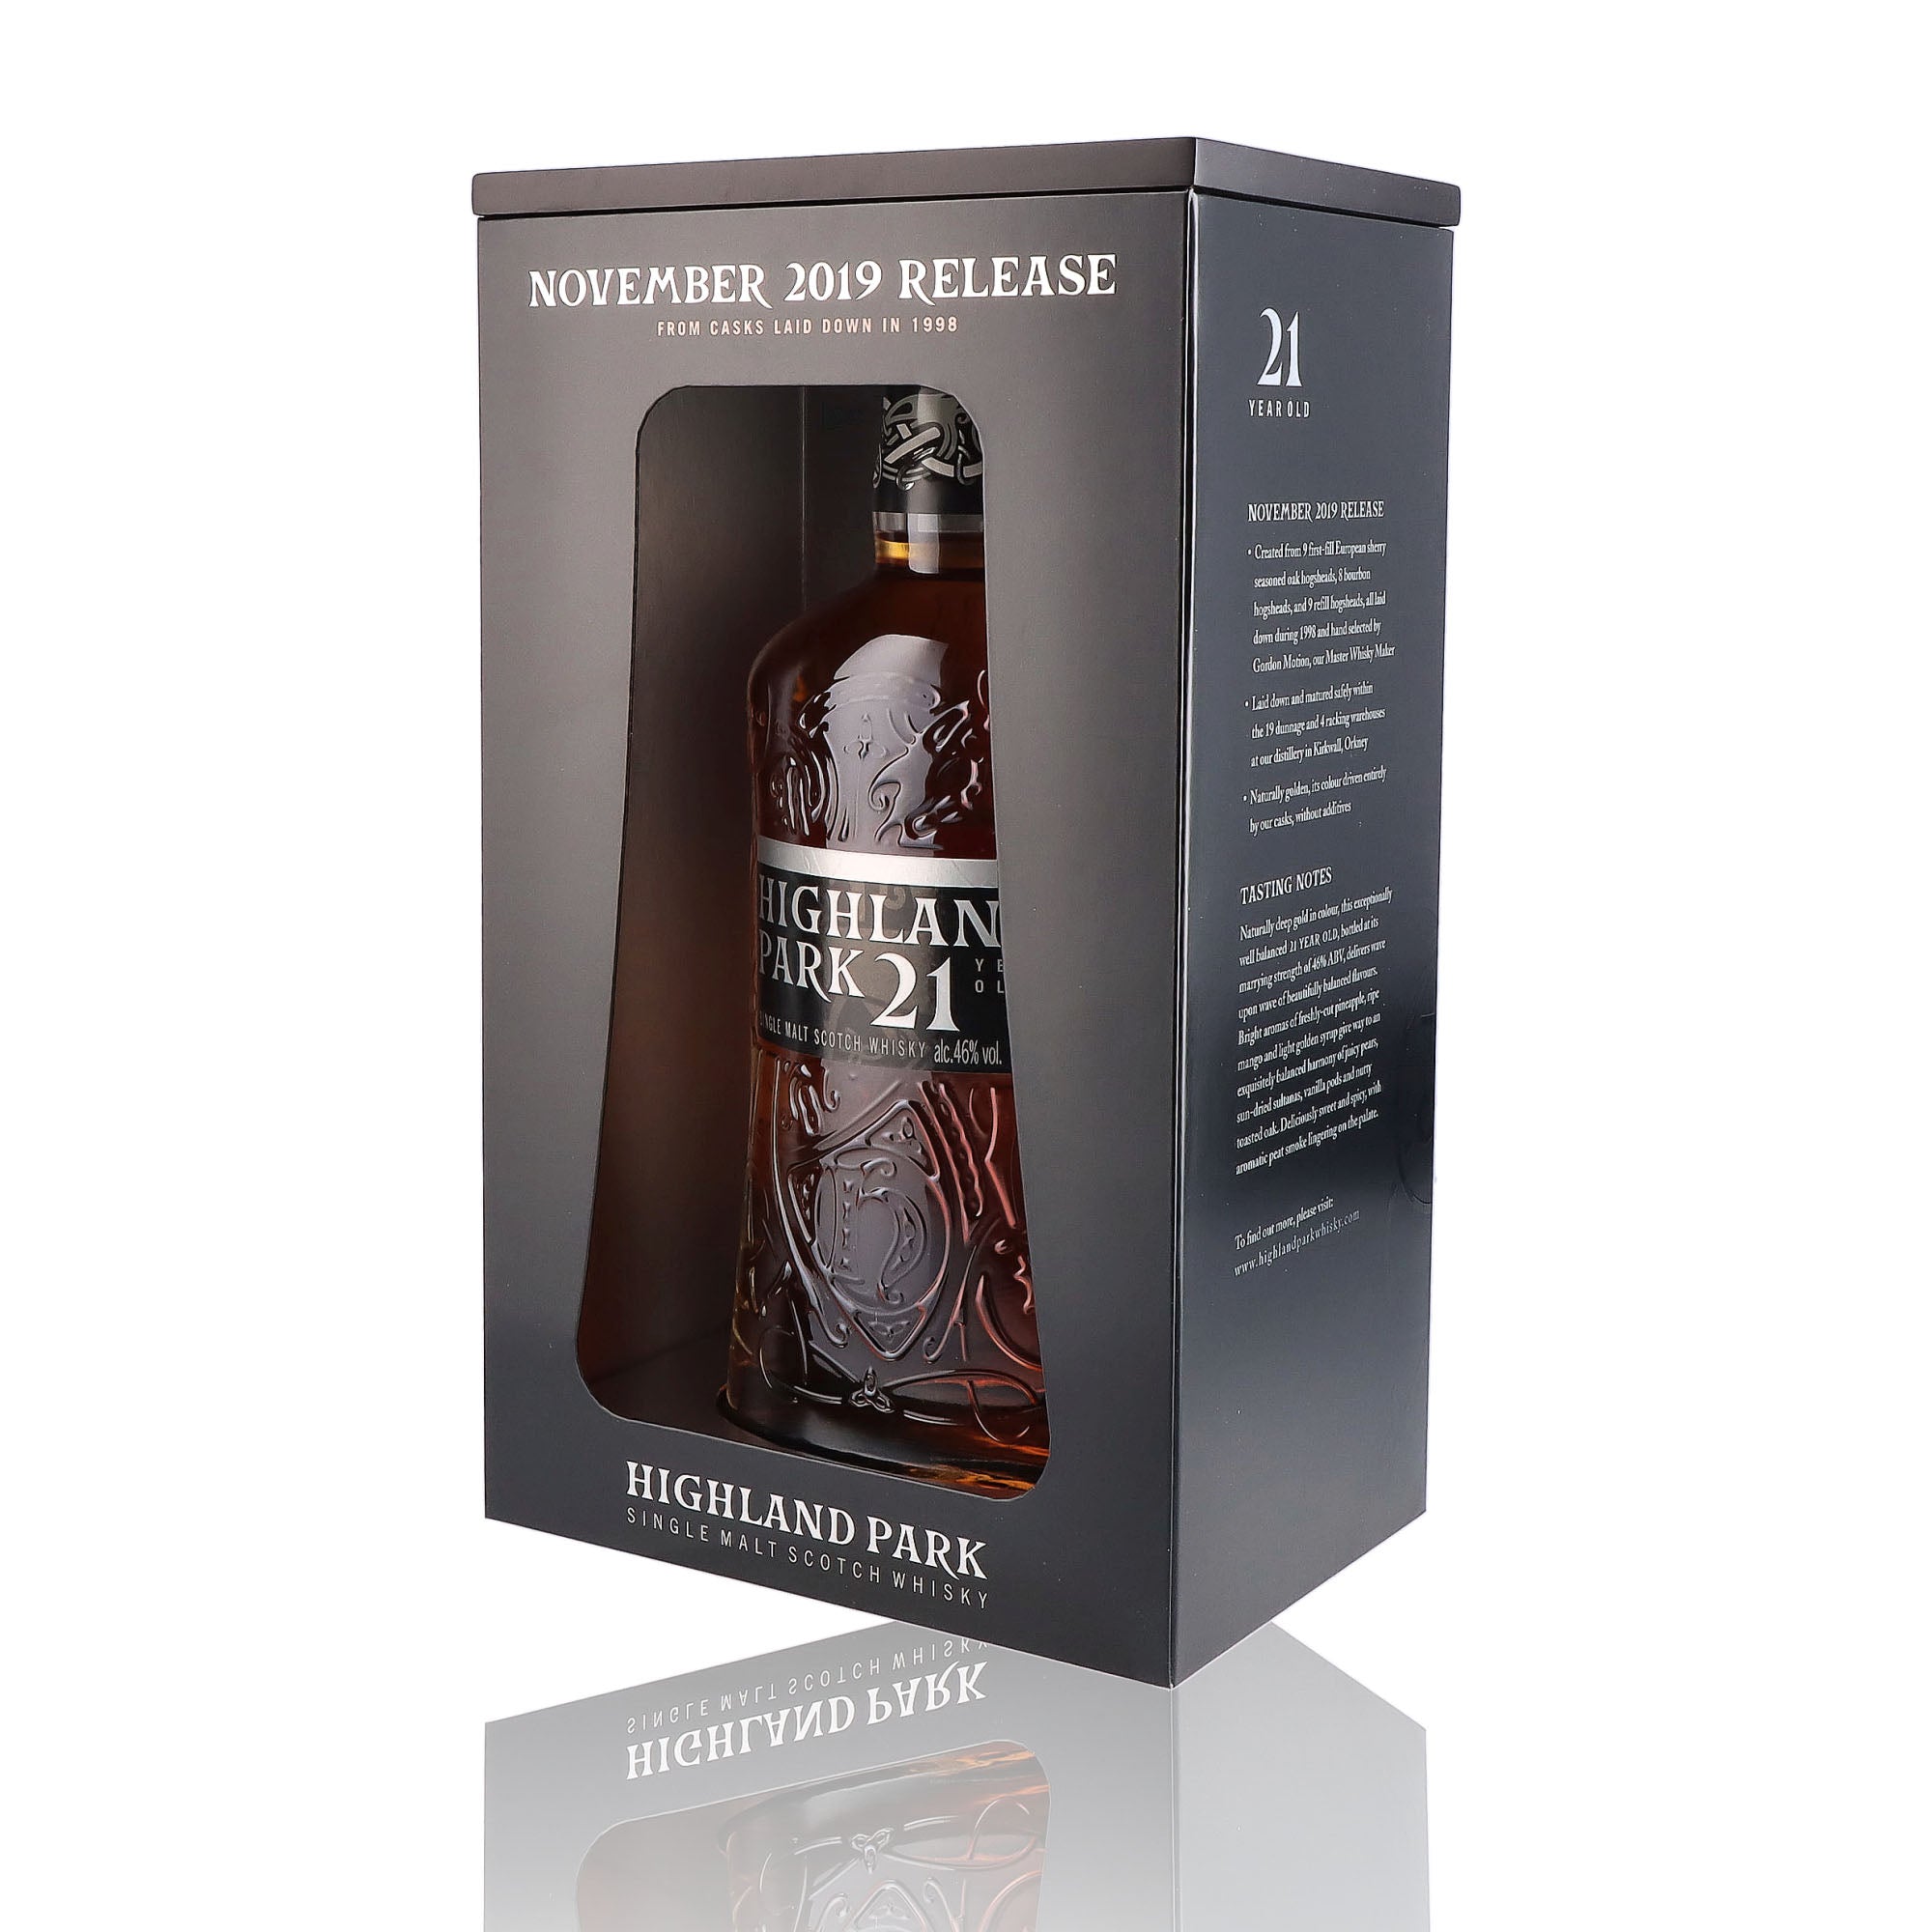 Une bouteille de Scotch Whisky Single Malt de la marque Highland Park, 21 ans d'âge.